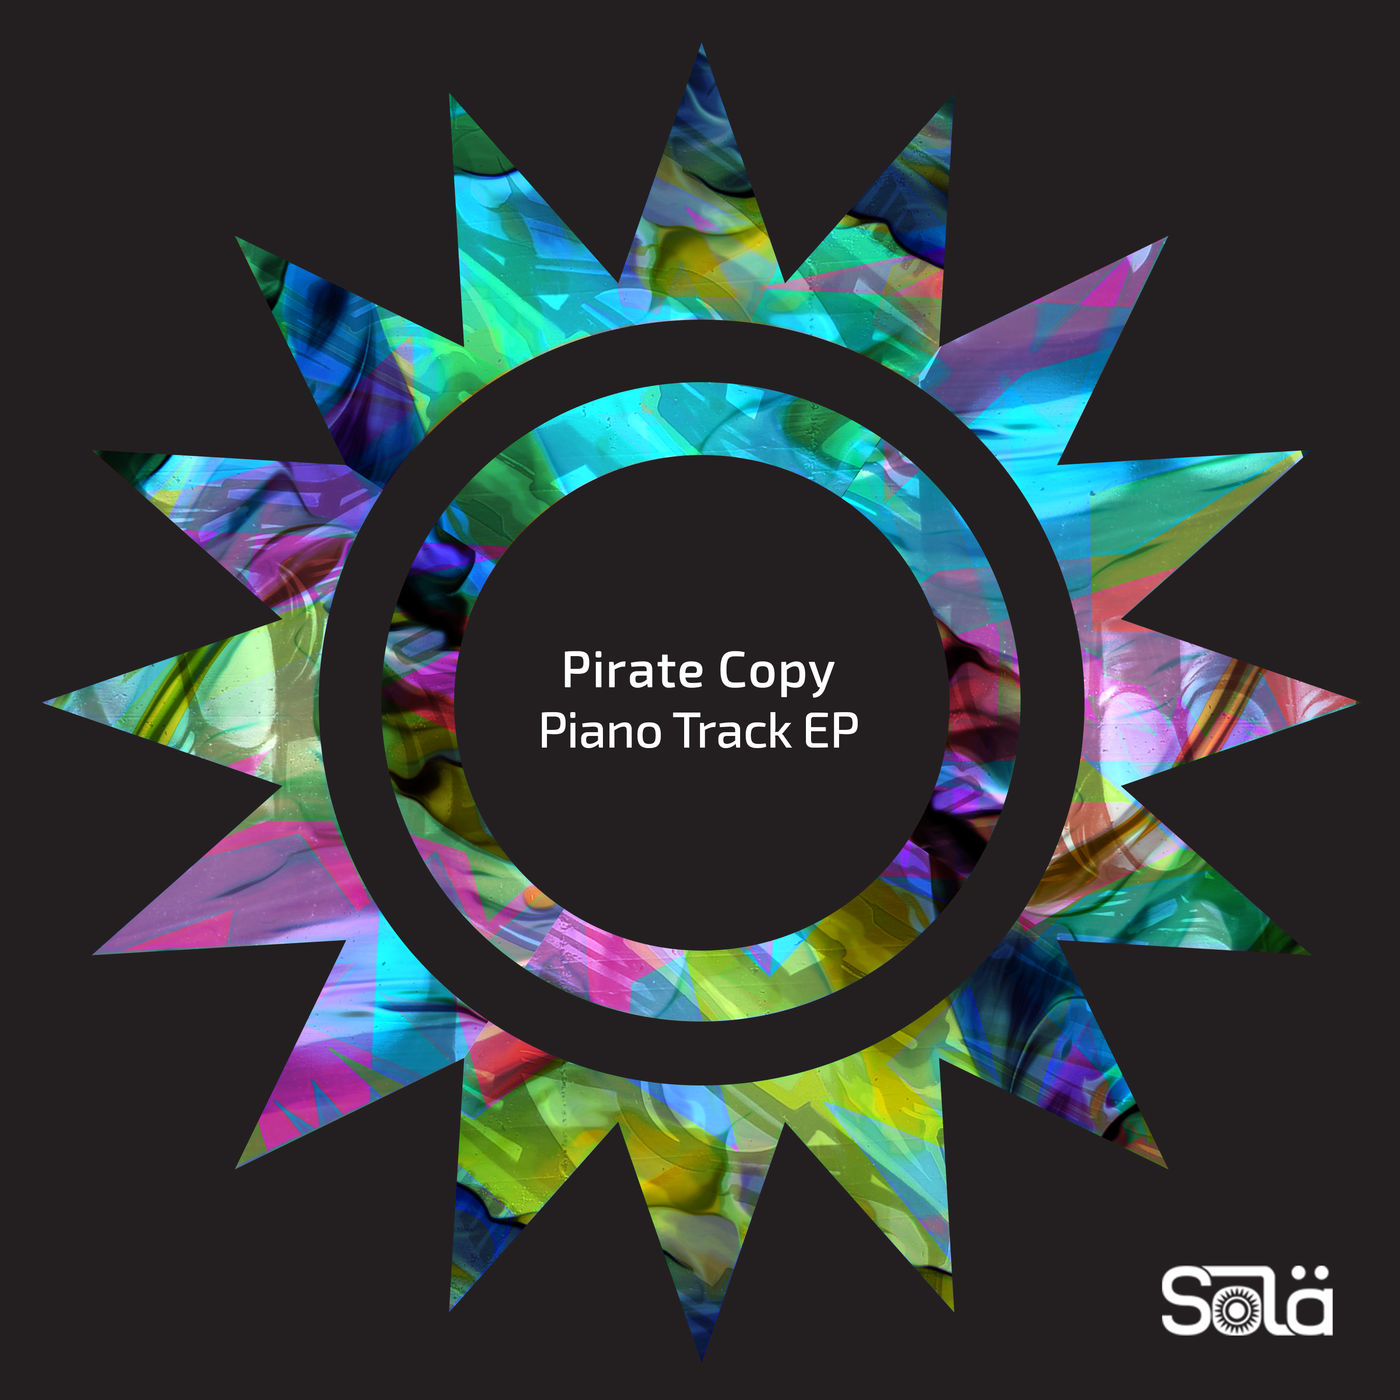 Pirate Copy - Piano Track EP / Sola